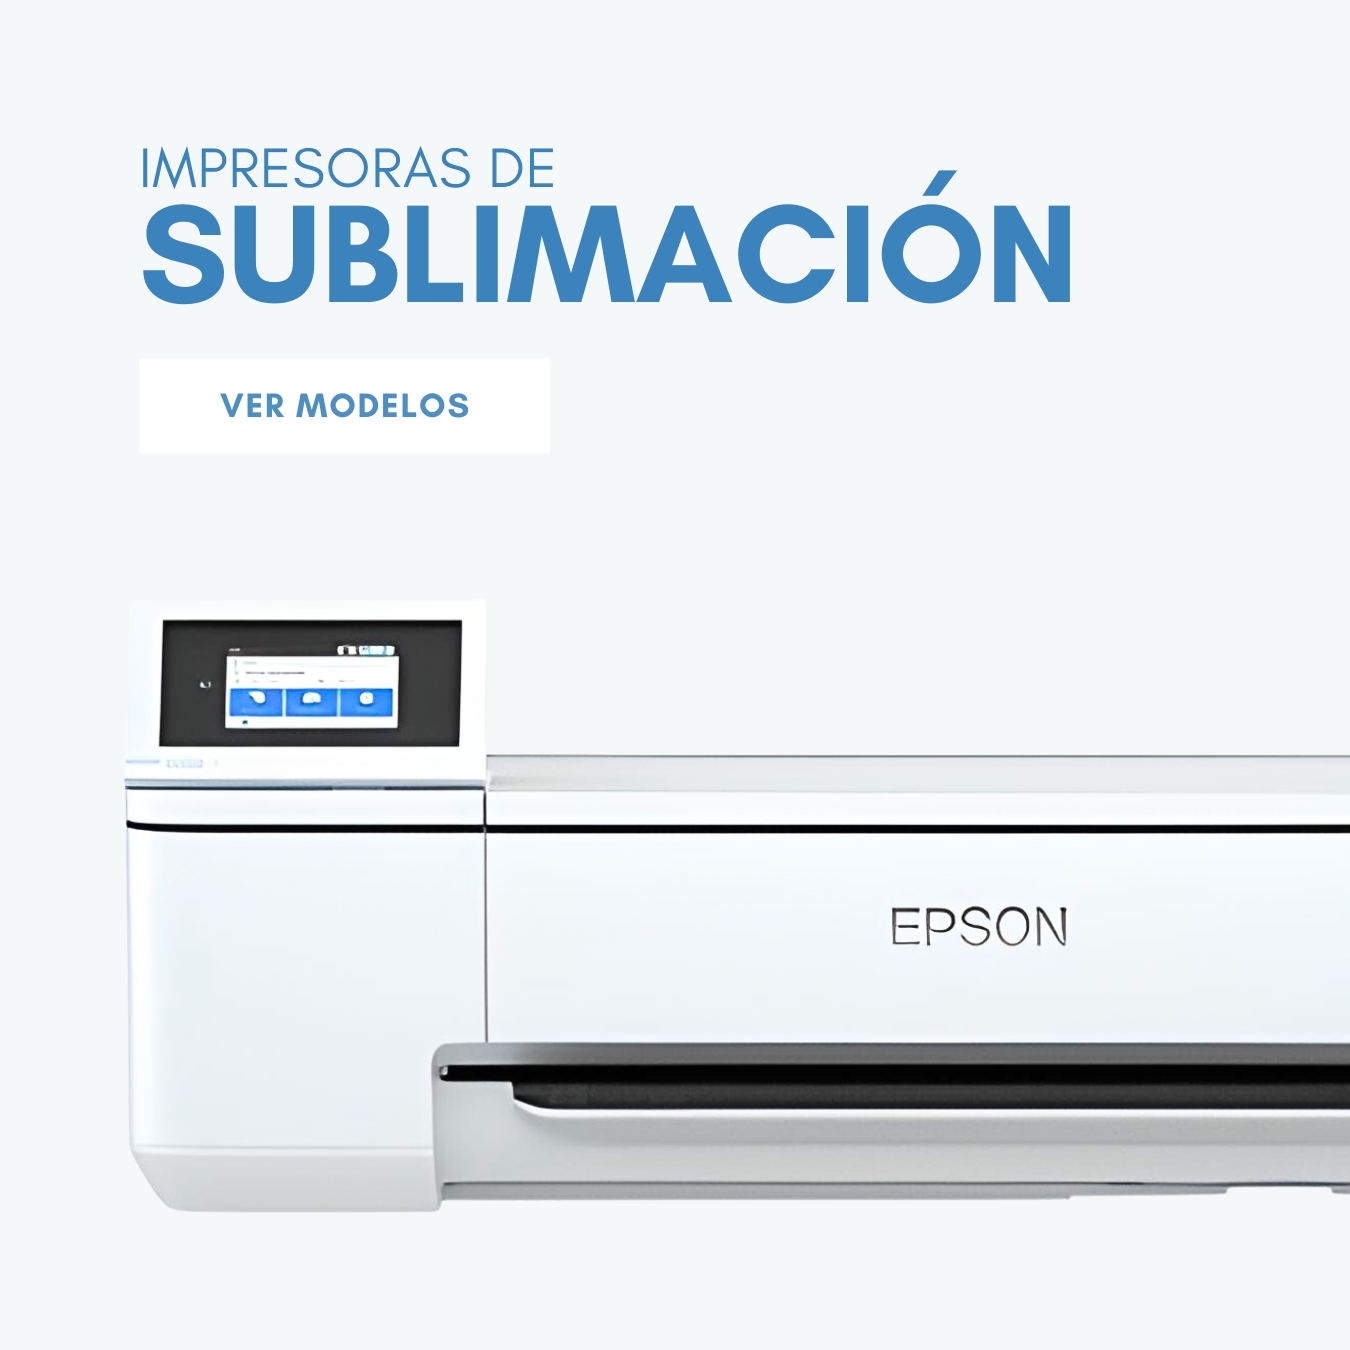 Impresoras de sublimación